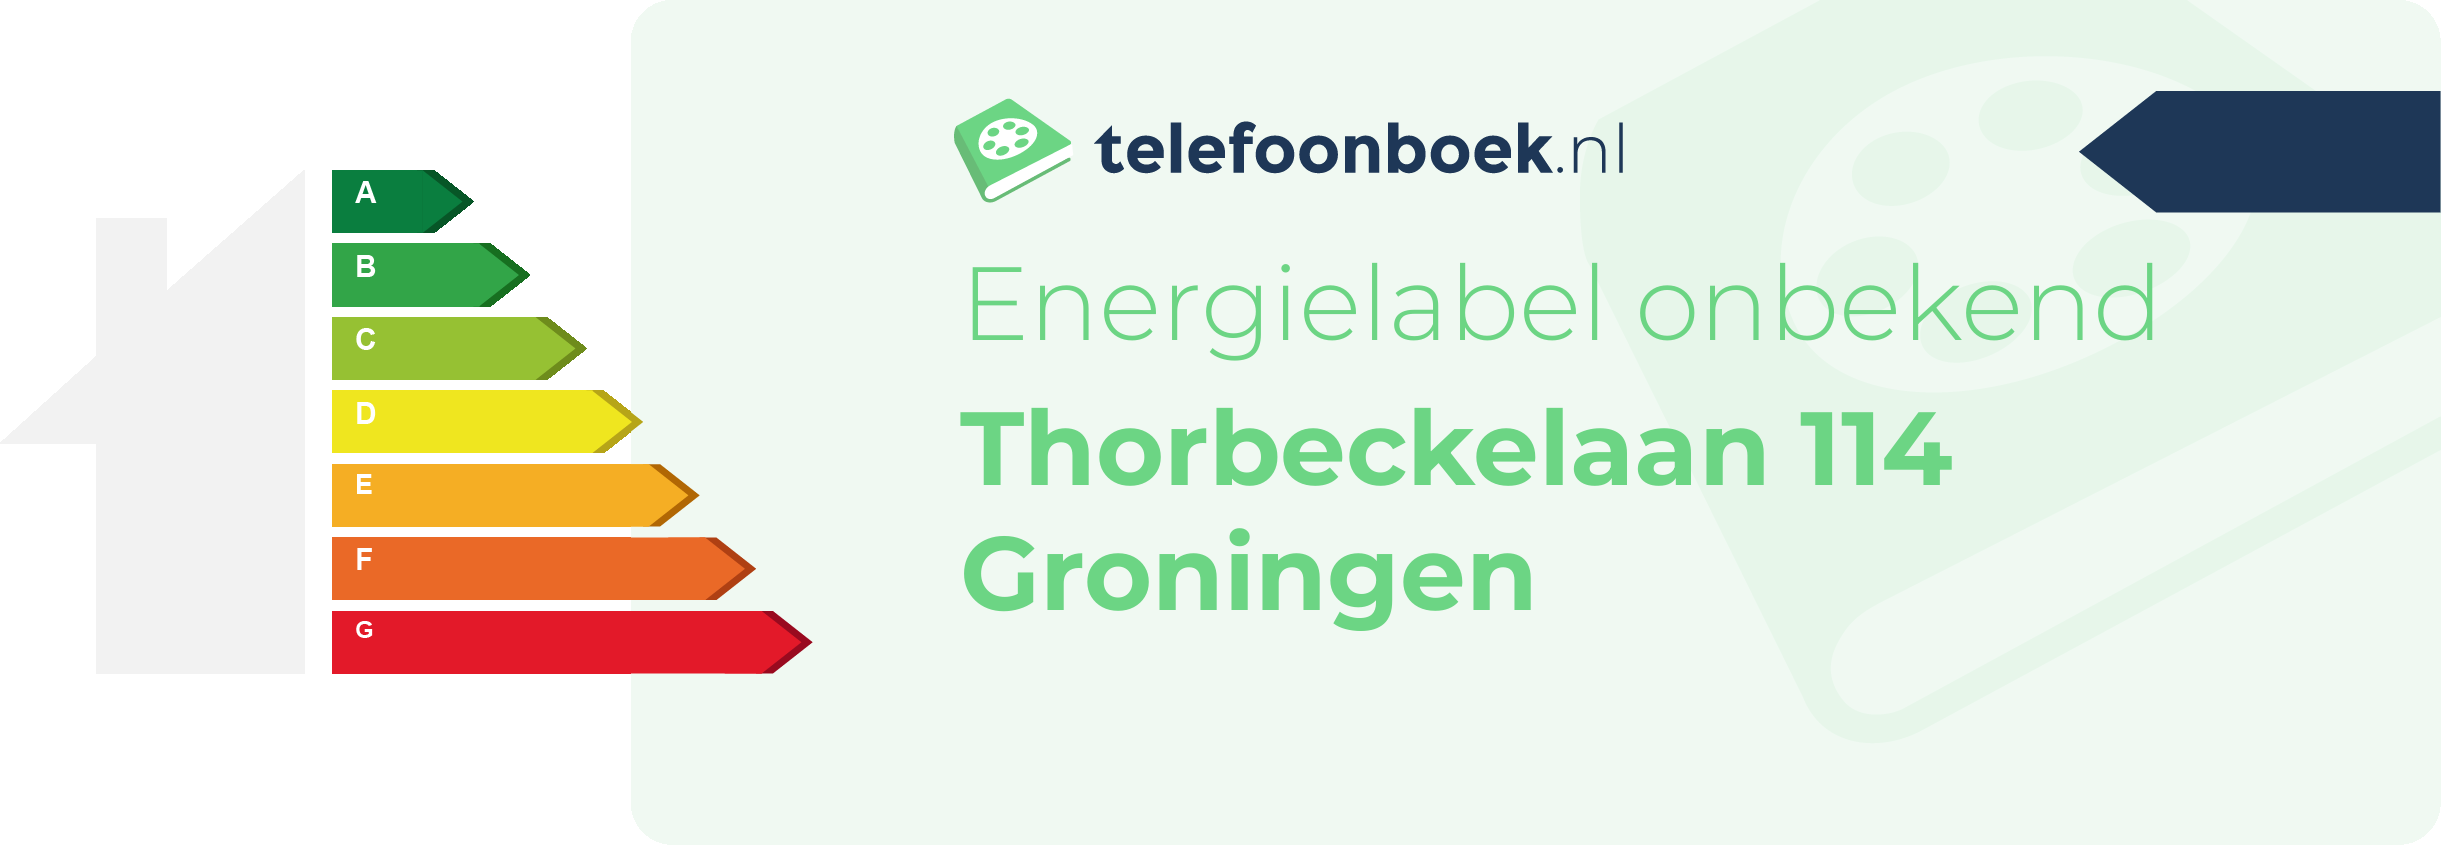 Energielabel Thorbeckelaan 114 Groningen